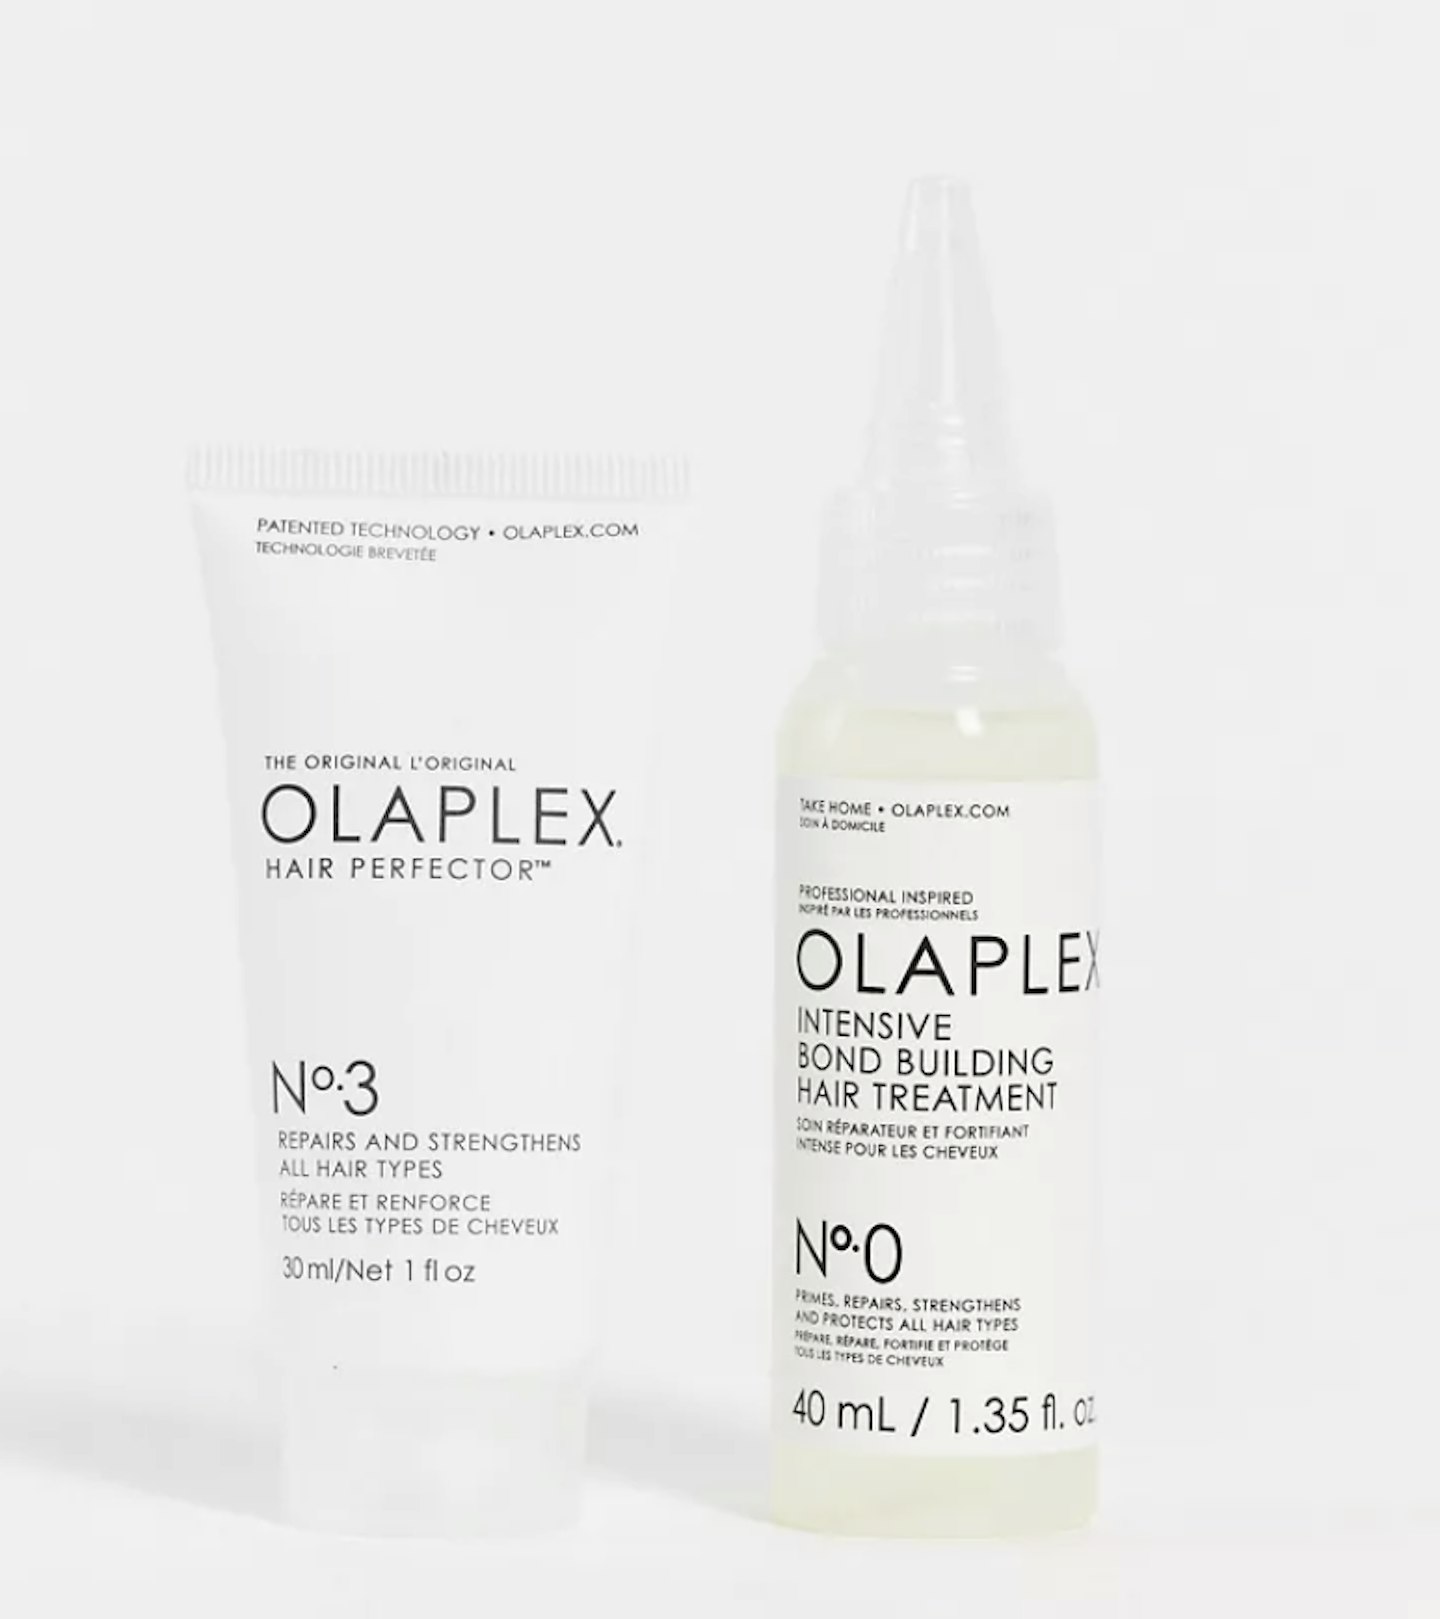 Olaplex Trial Repair Kit